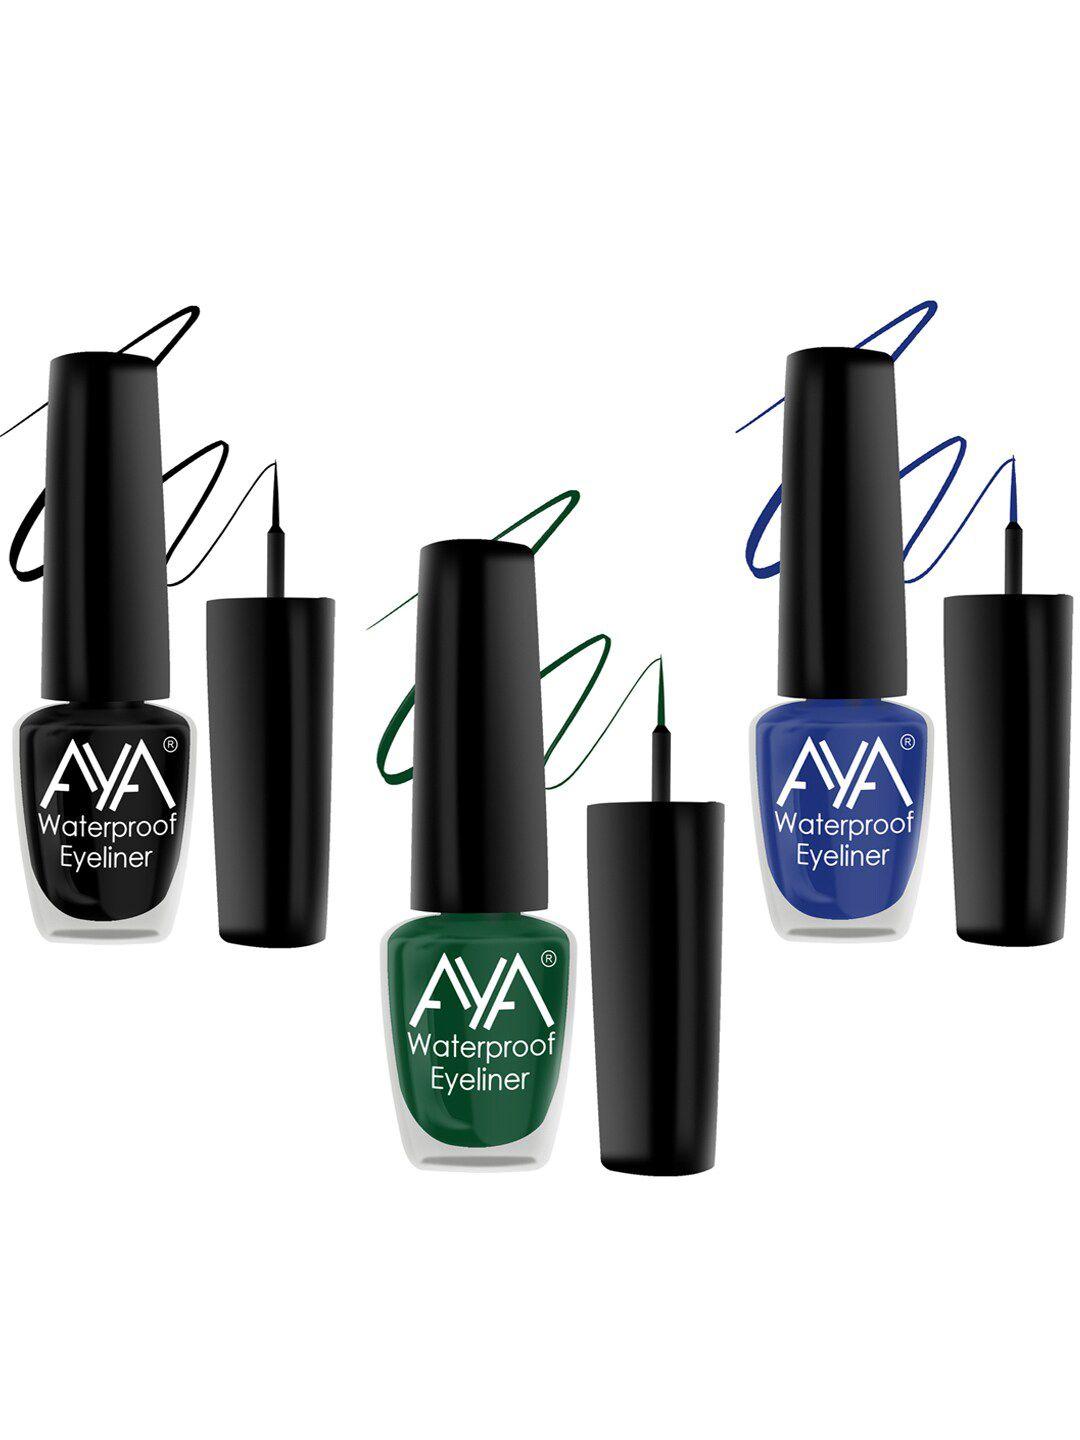 aya set of 3 long lasting 24 hrs & waterproof liquid eyeliner 5ml each - green + black + blue